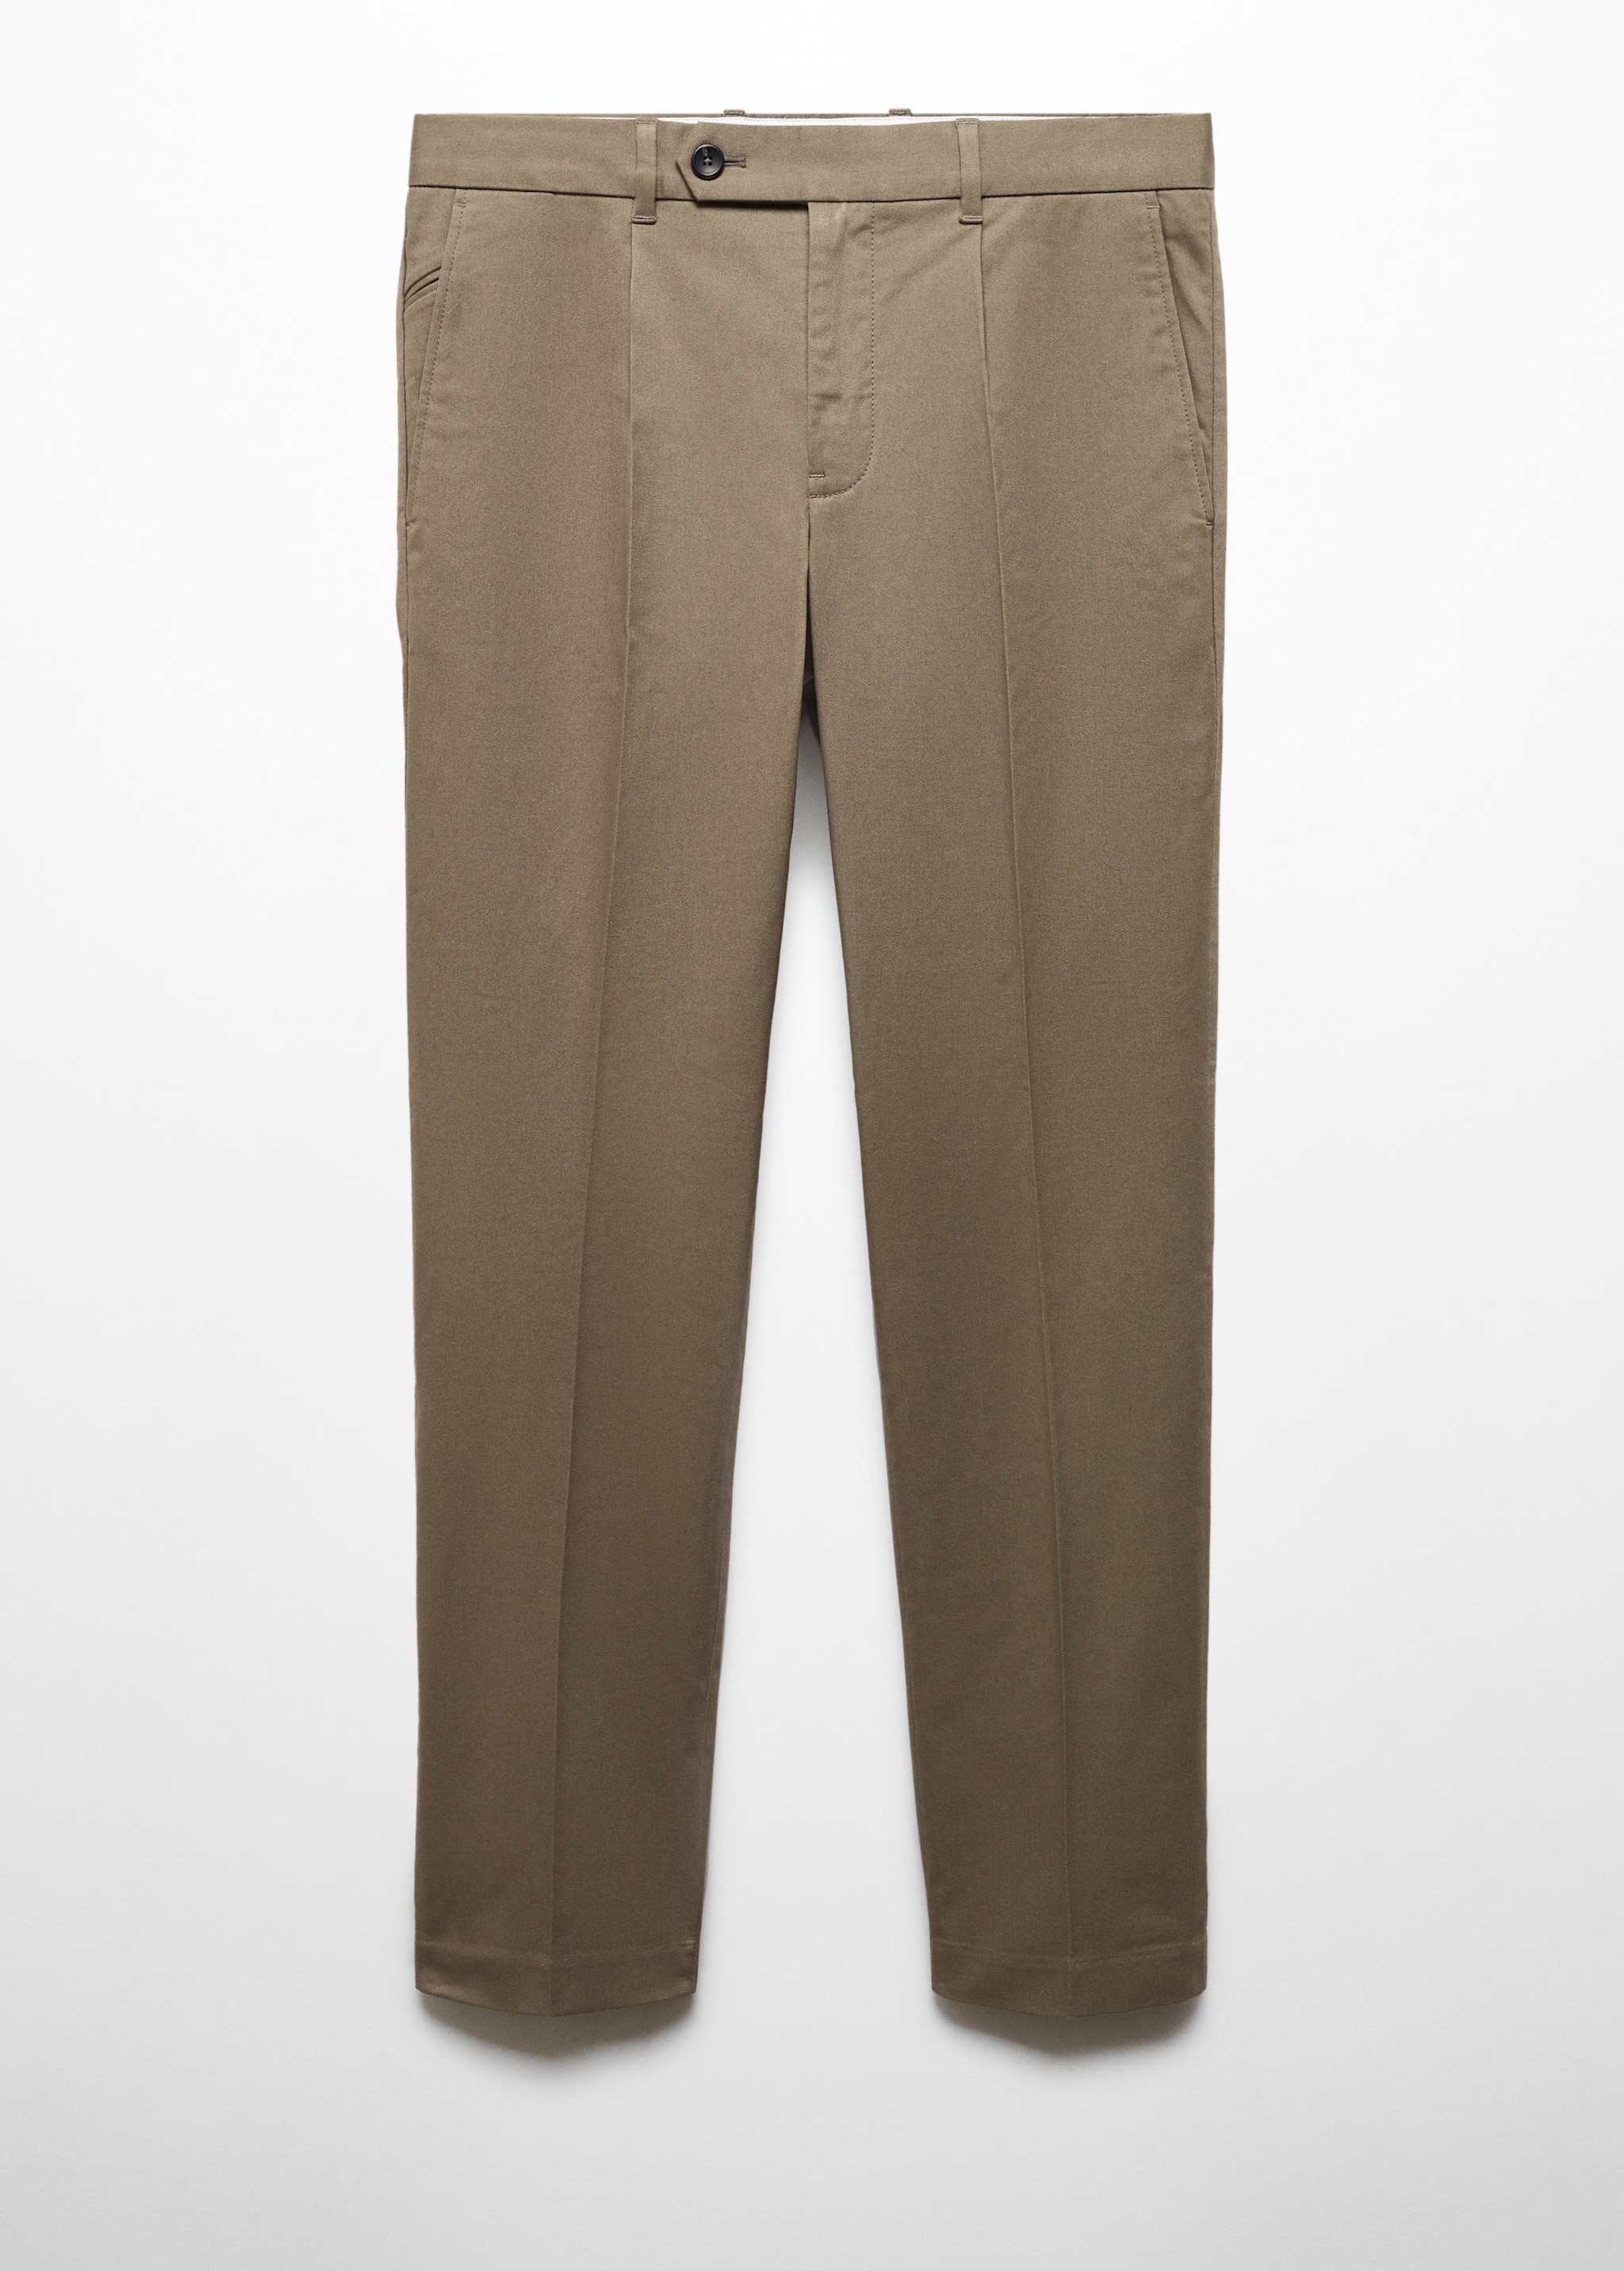 Pantalon coton slim-fit pinces - Article sans modèle